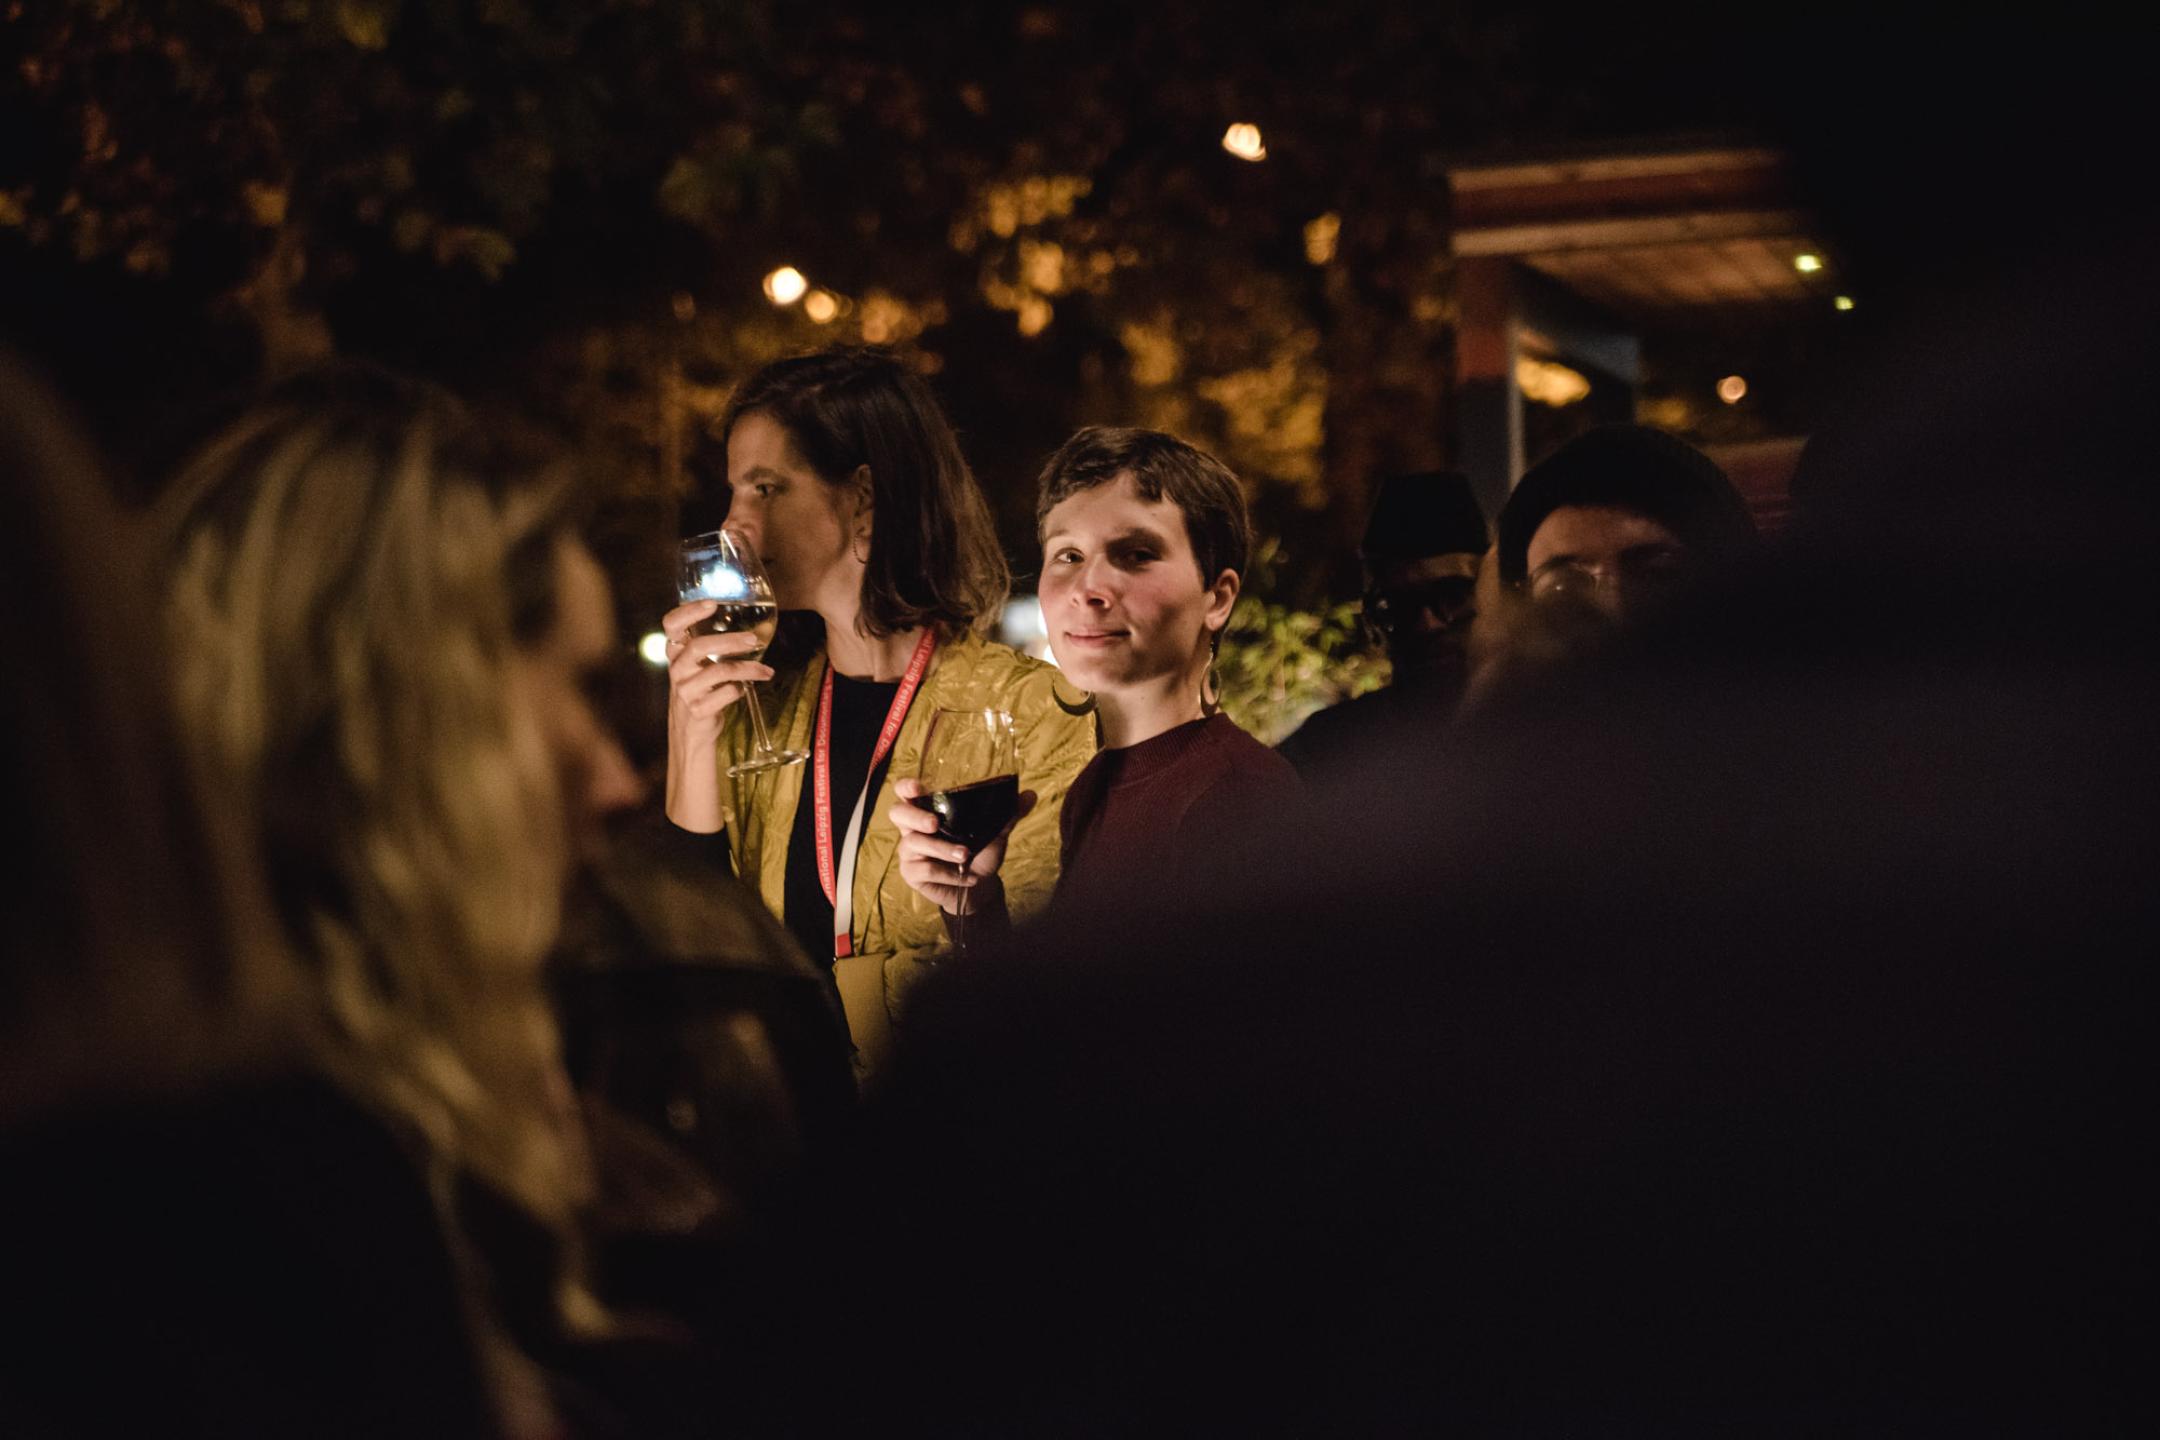 Bei einer Abendveranstaltung steht eine Frau mit kurzen Haaren und einem Glas Rotwein in der Hand umringt von weiteren Personen. Sie blickt seitlich über ihre Schulter direkt in die Kamera und lächelt.